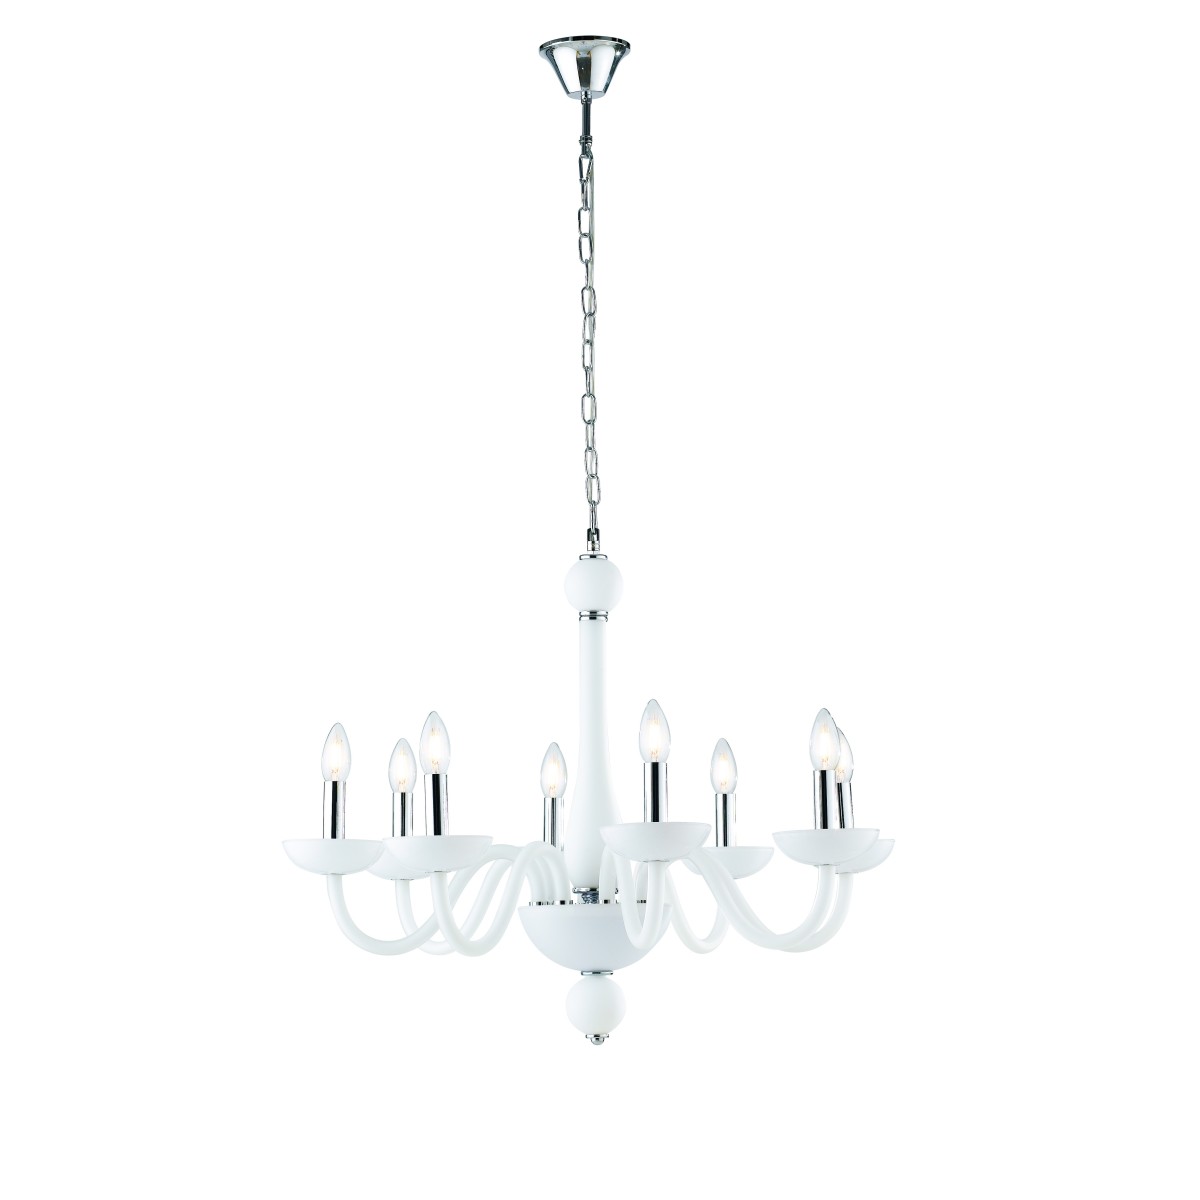 Lampadario a soffitto Alfiere design contemporaneo moderno in vetro bianco e finiture cromo 8 lampadine